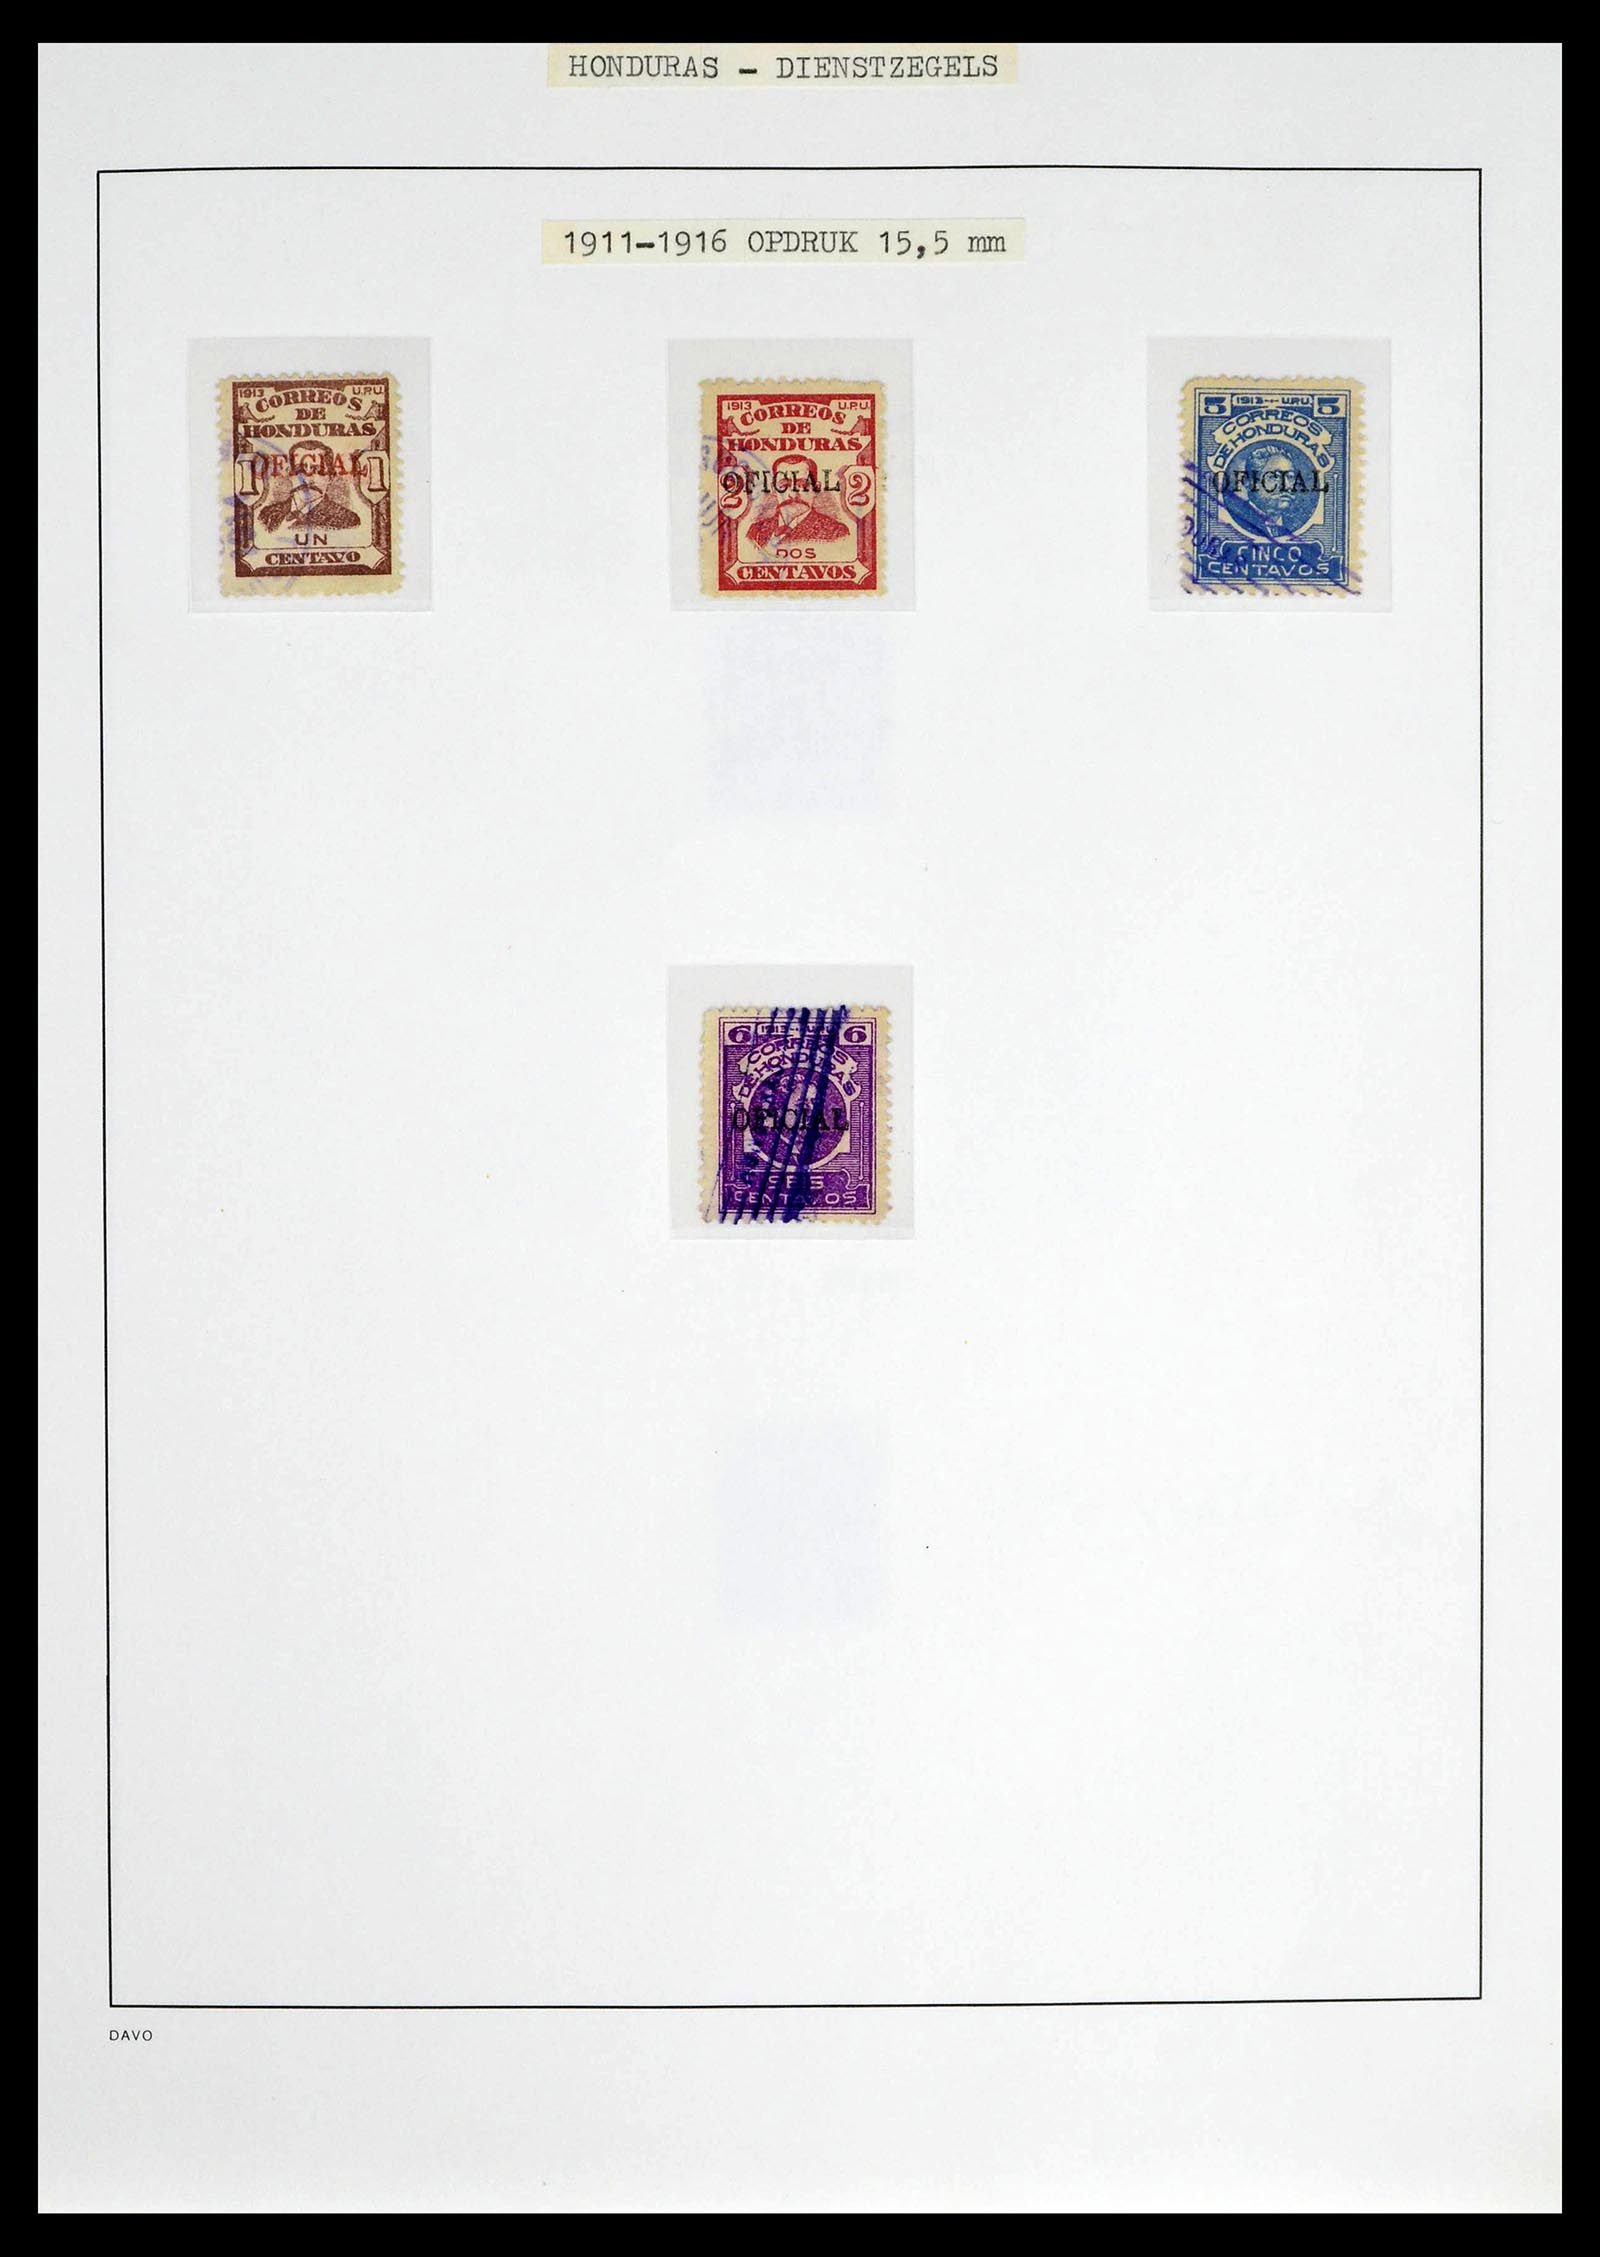 39404 0011 - Postzegelverzameling 39404 Honduras dienstzegels 1890-1974.